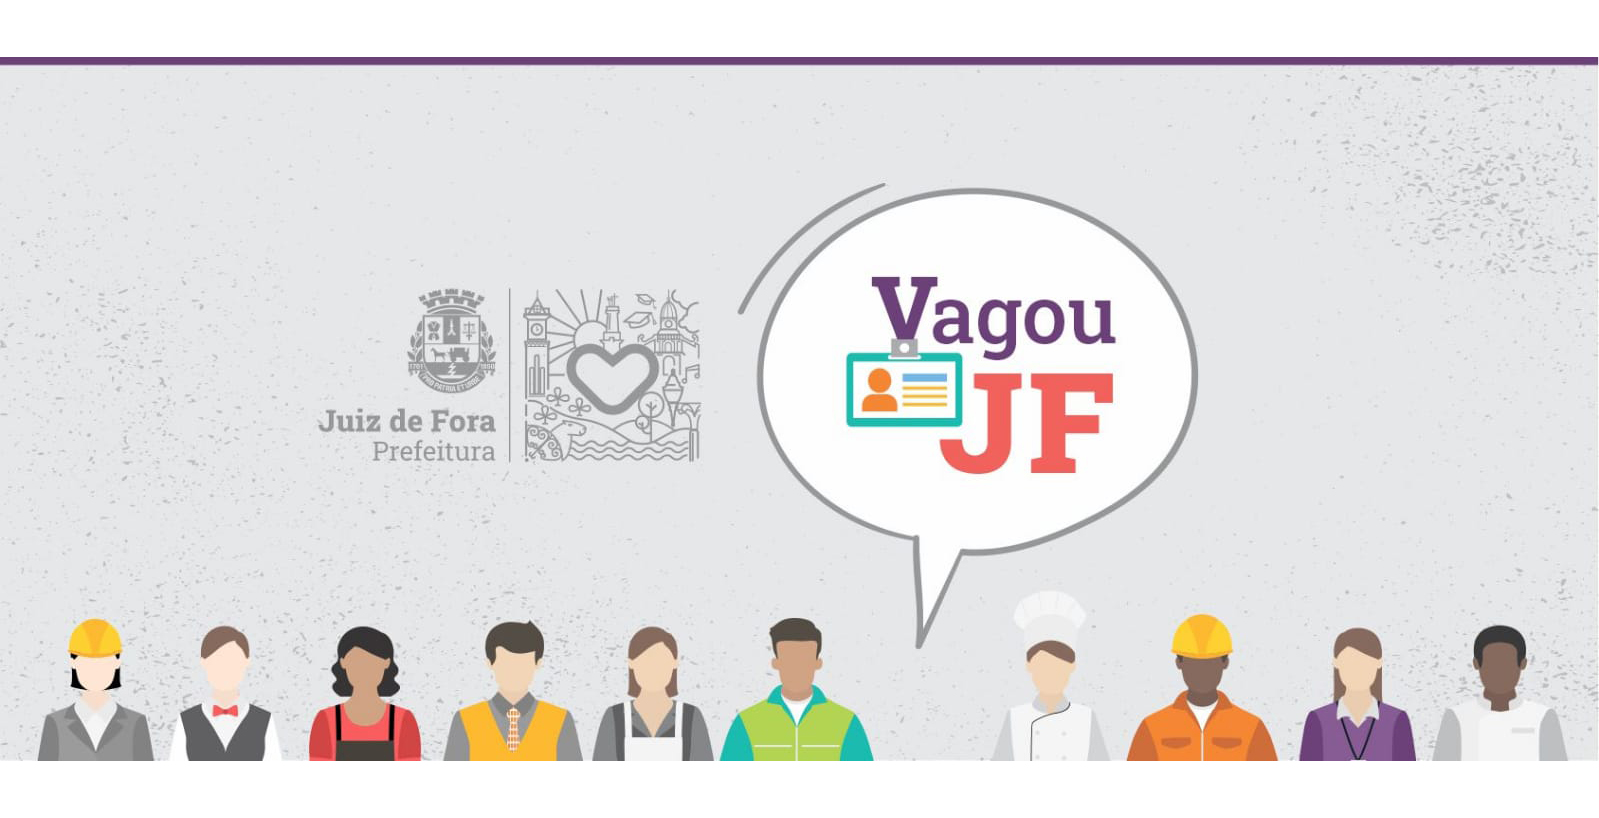 Portal de Notícias PJF | “Vagou JF” tem vagas abertas para construção civil e outras oportunidades | SEDIC - 5/7/2022